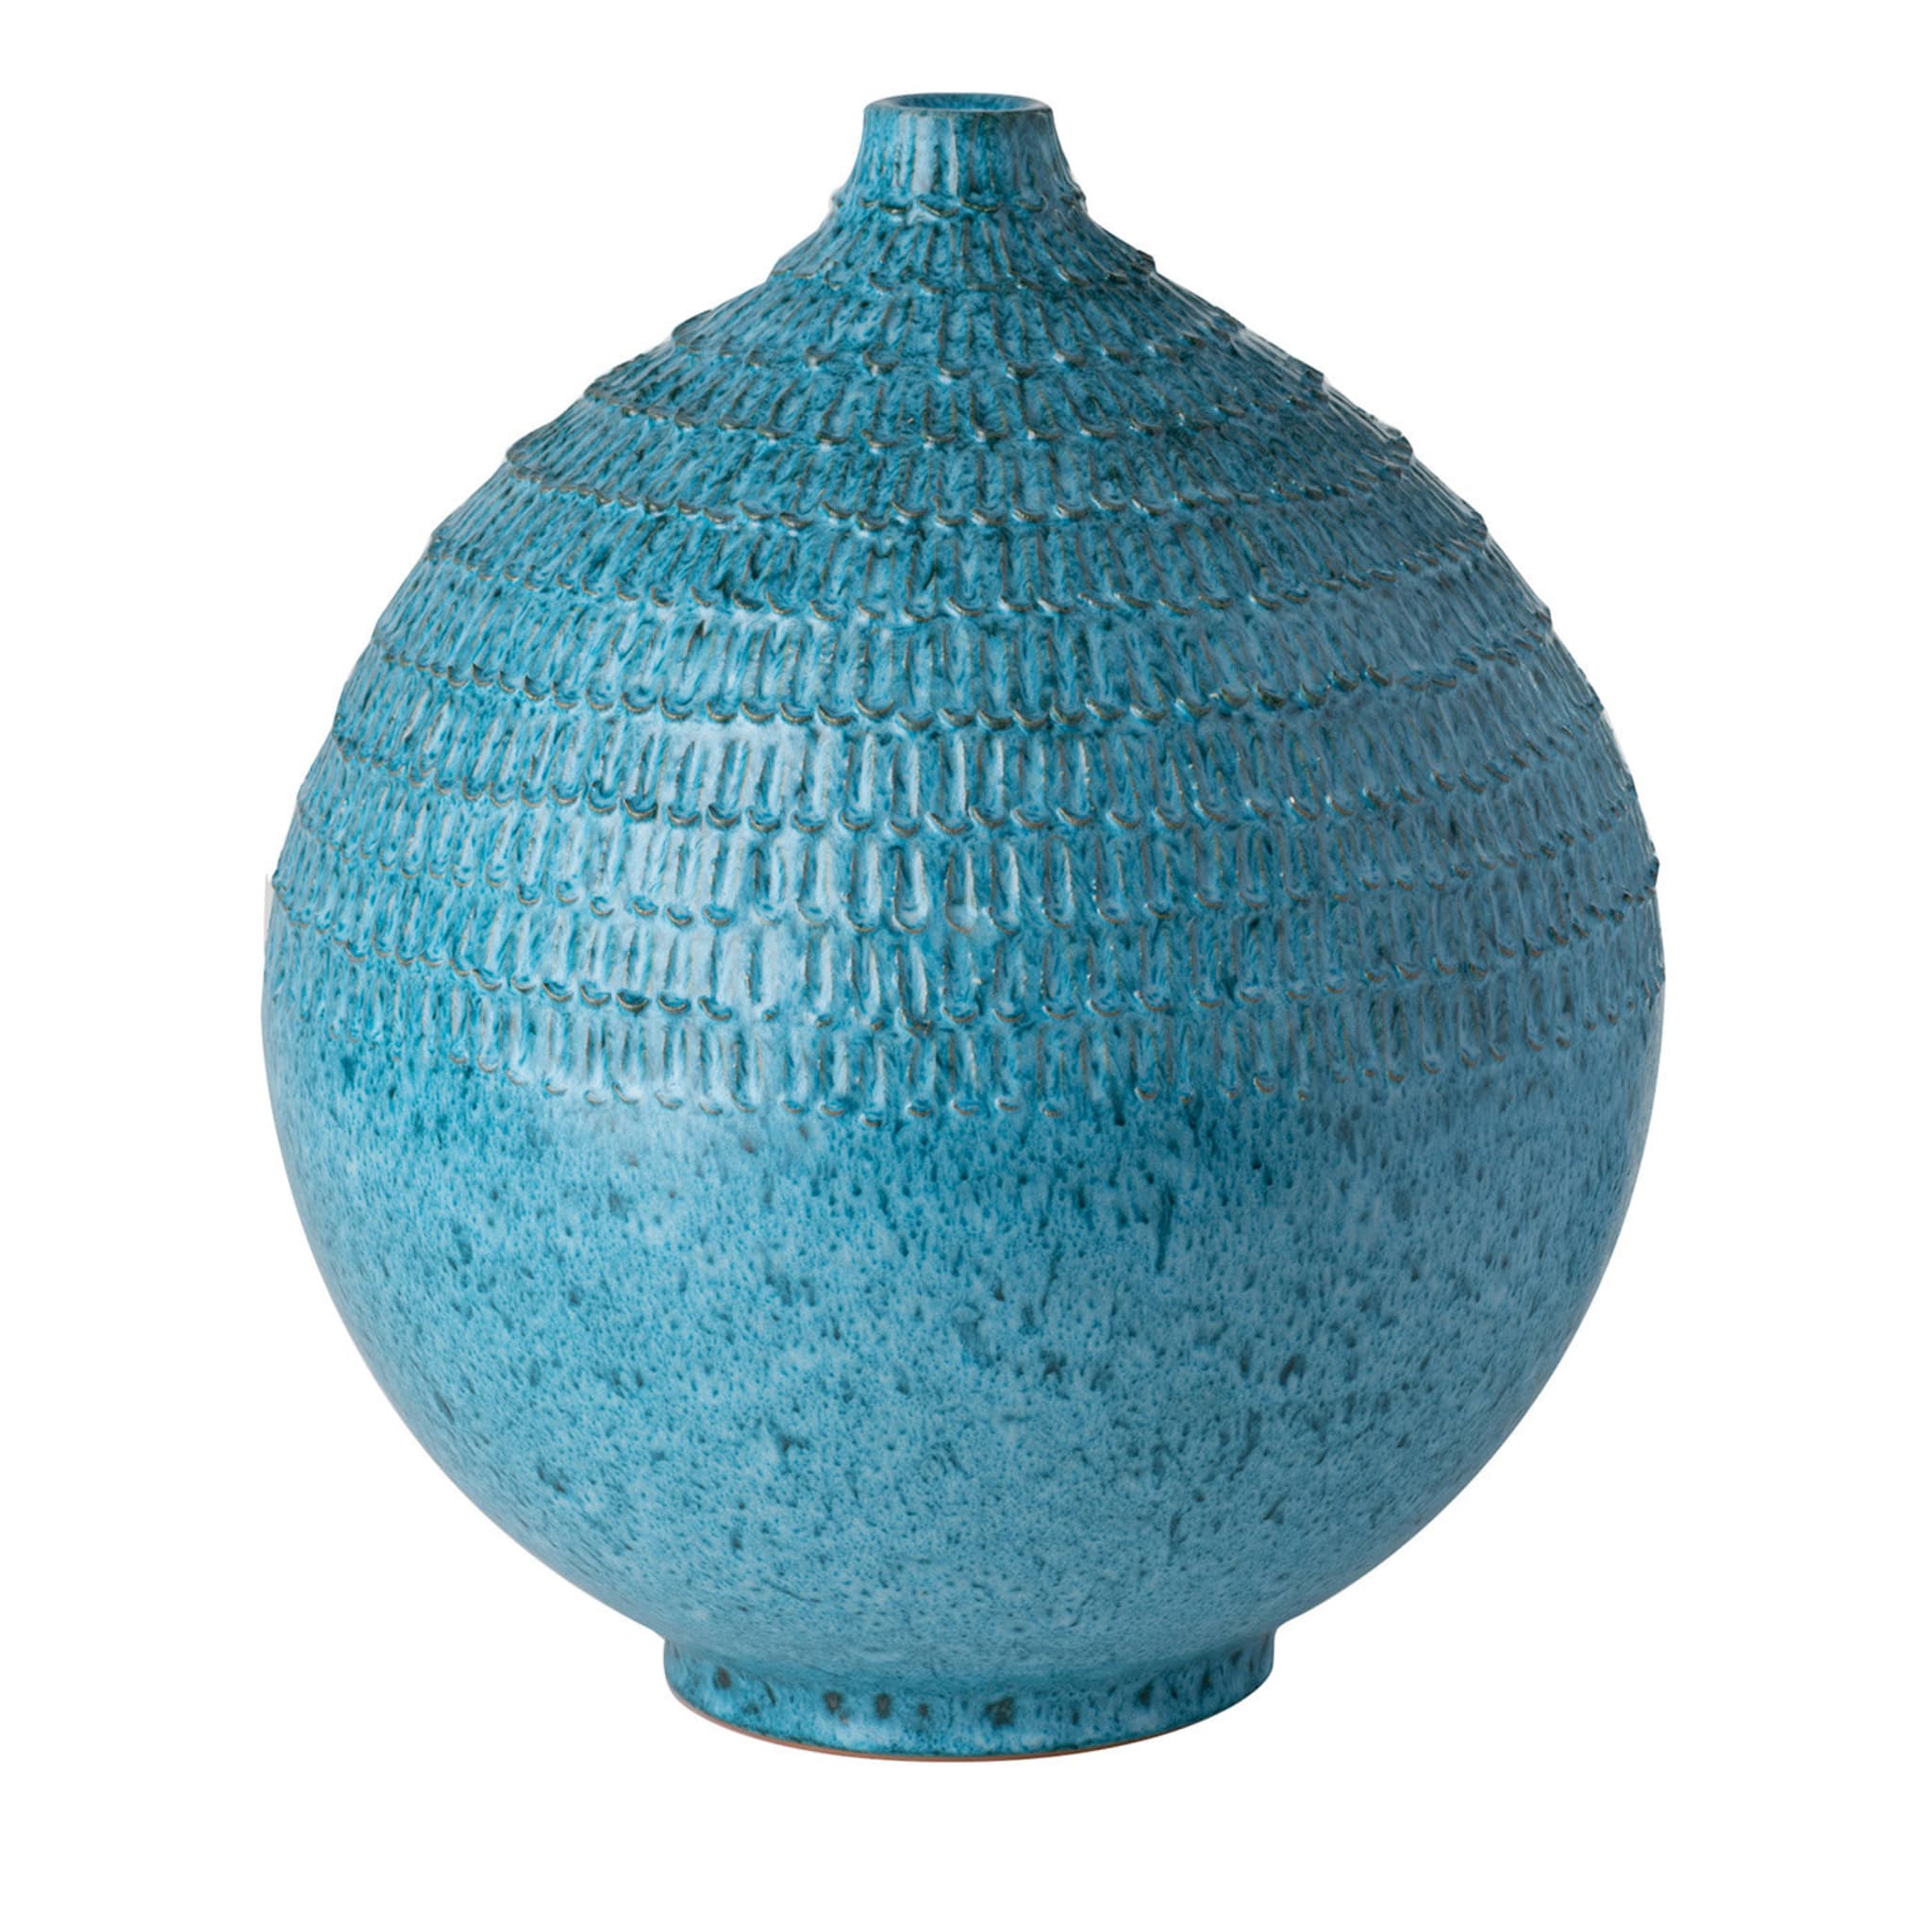 Türkisfarbene gekerbte Vase - Hauptansicht